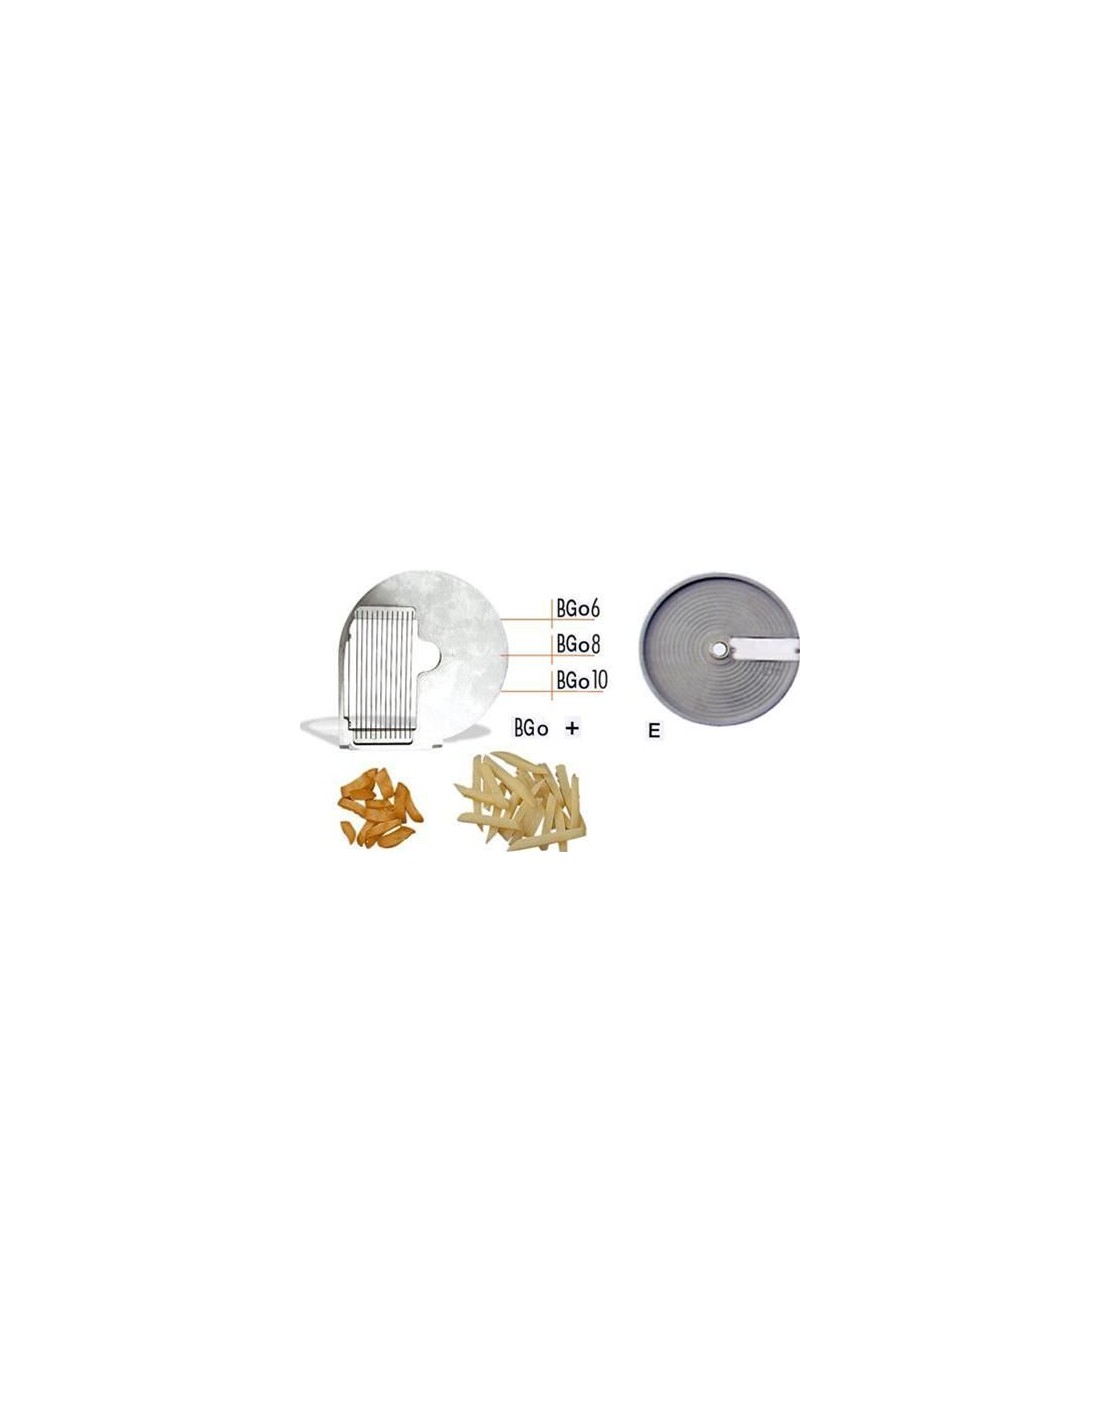 Disco tagliaverdura  - per modello chef 600 - 800 - lavabile in lavastoviglie - da usare con disco mod. E - Taglio spessore mm 1